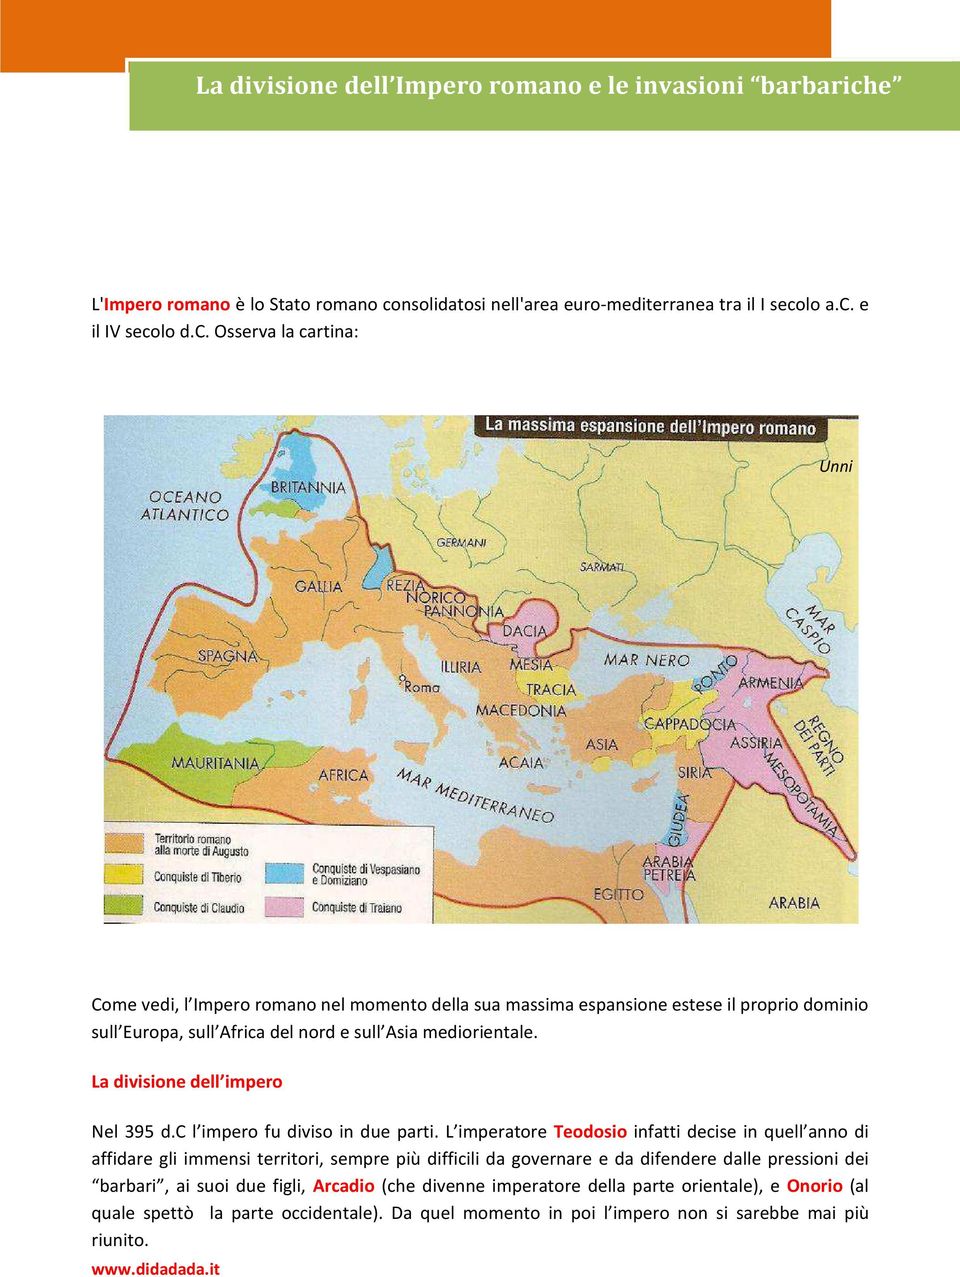 nsolidatosi nell'area euro-mediterranea tra il I seco